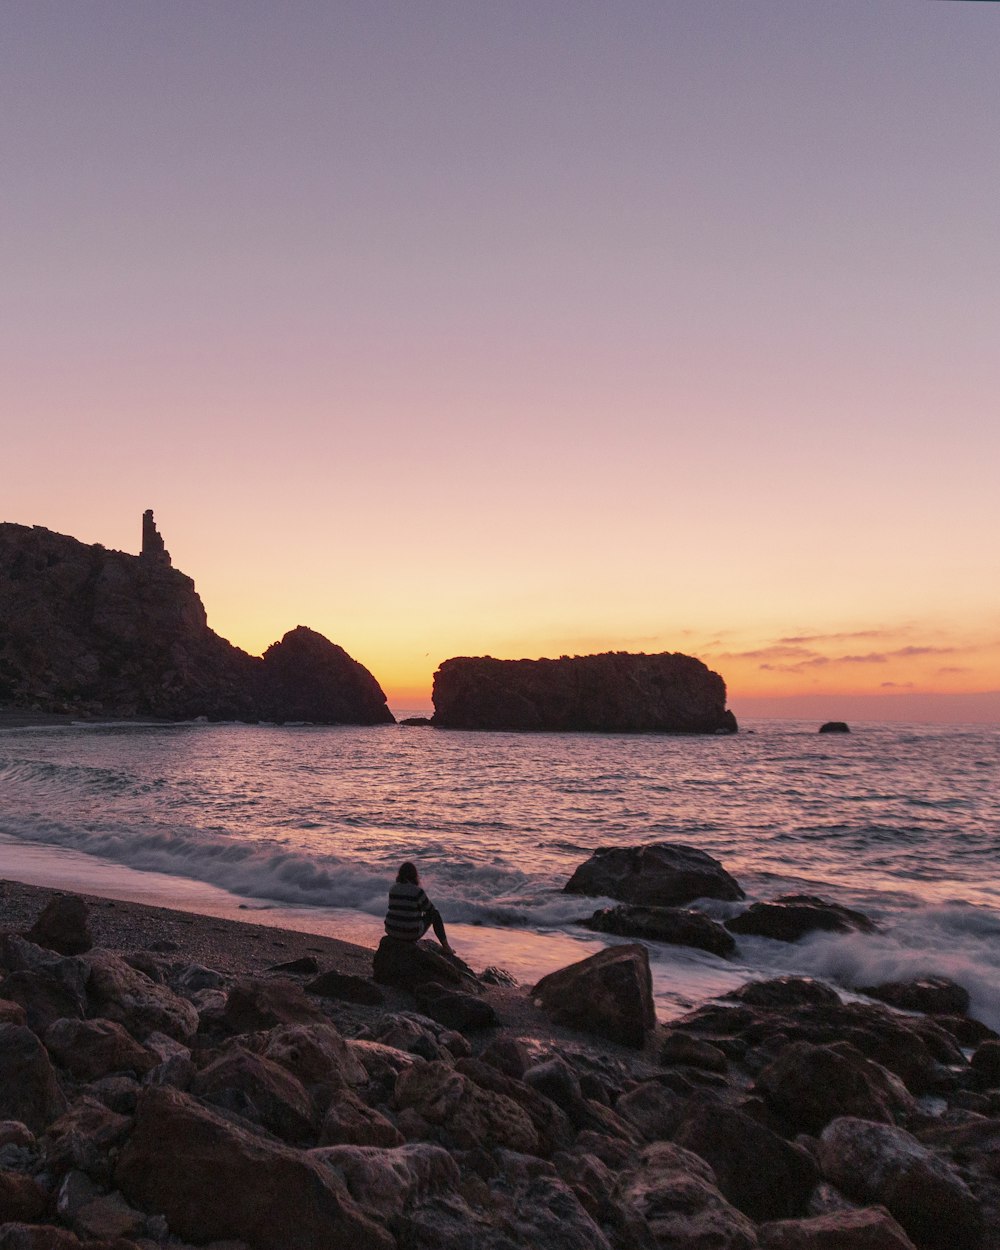 personne assise sur la formation rocheuse près de la mer au coucher du soleil